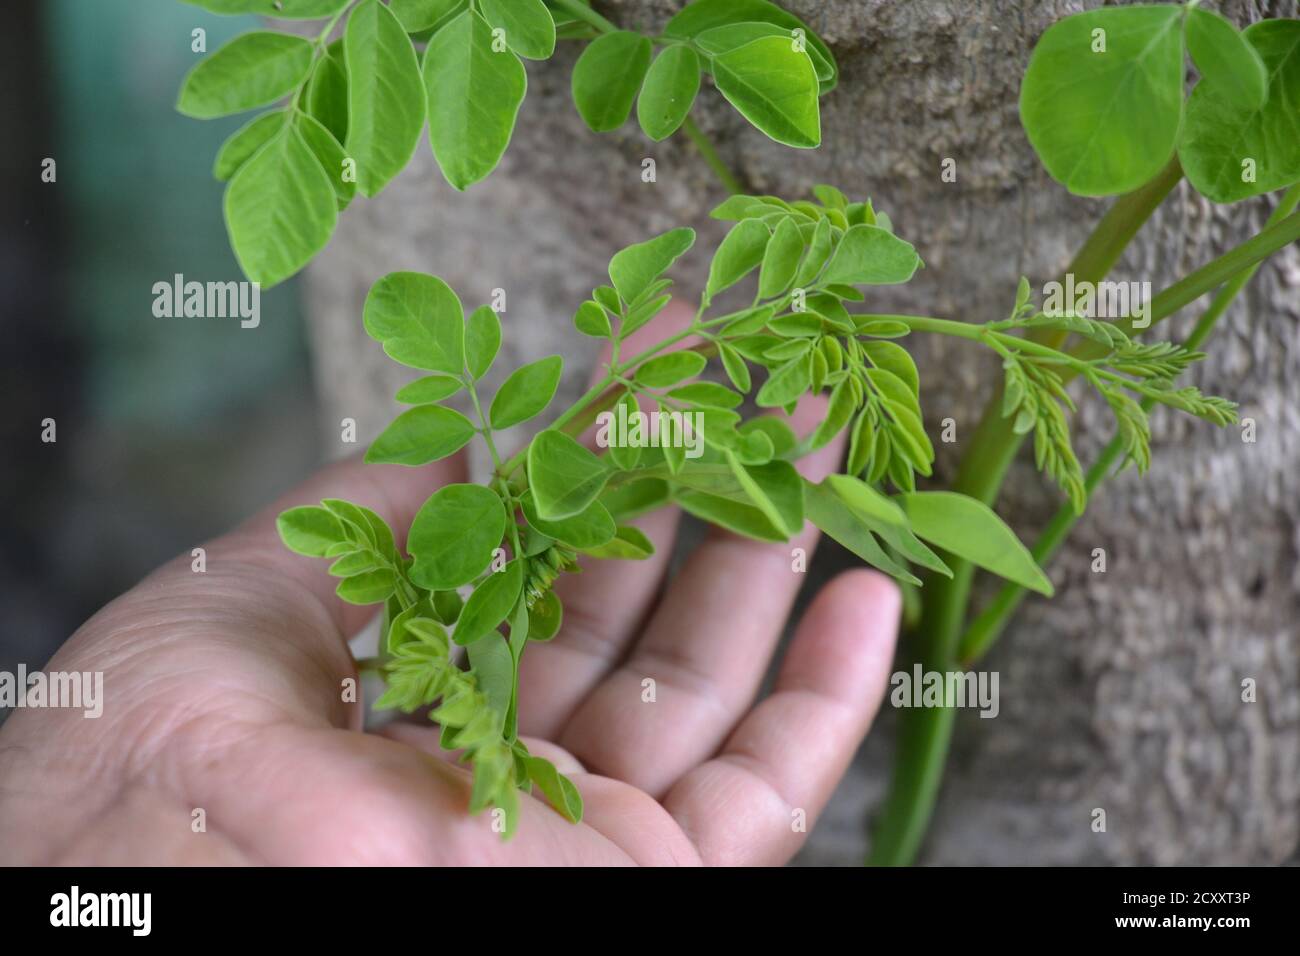 Moringa weiche Blätter. Grüne Moringa Blätter sind von hohem medizinischen Wert und die Drumsticks sind sehr leckeres Gemüse. Stockfoto